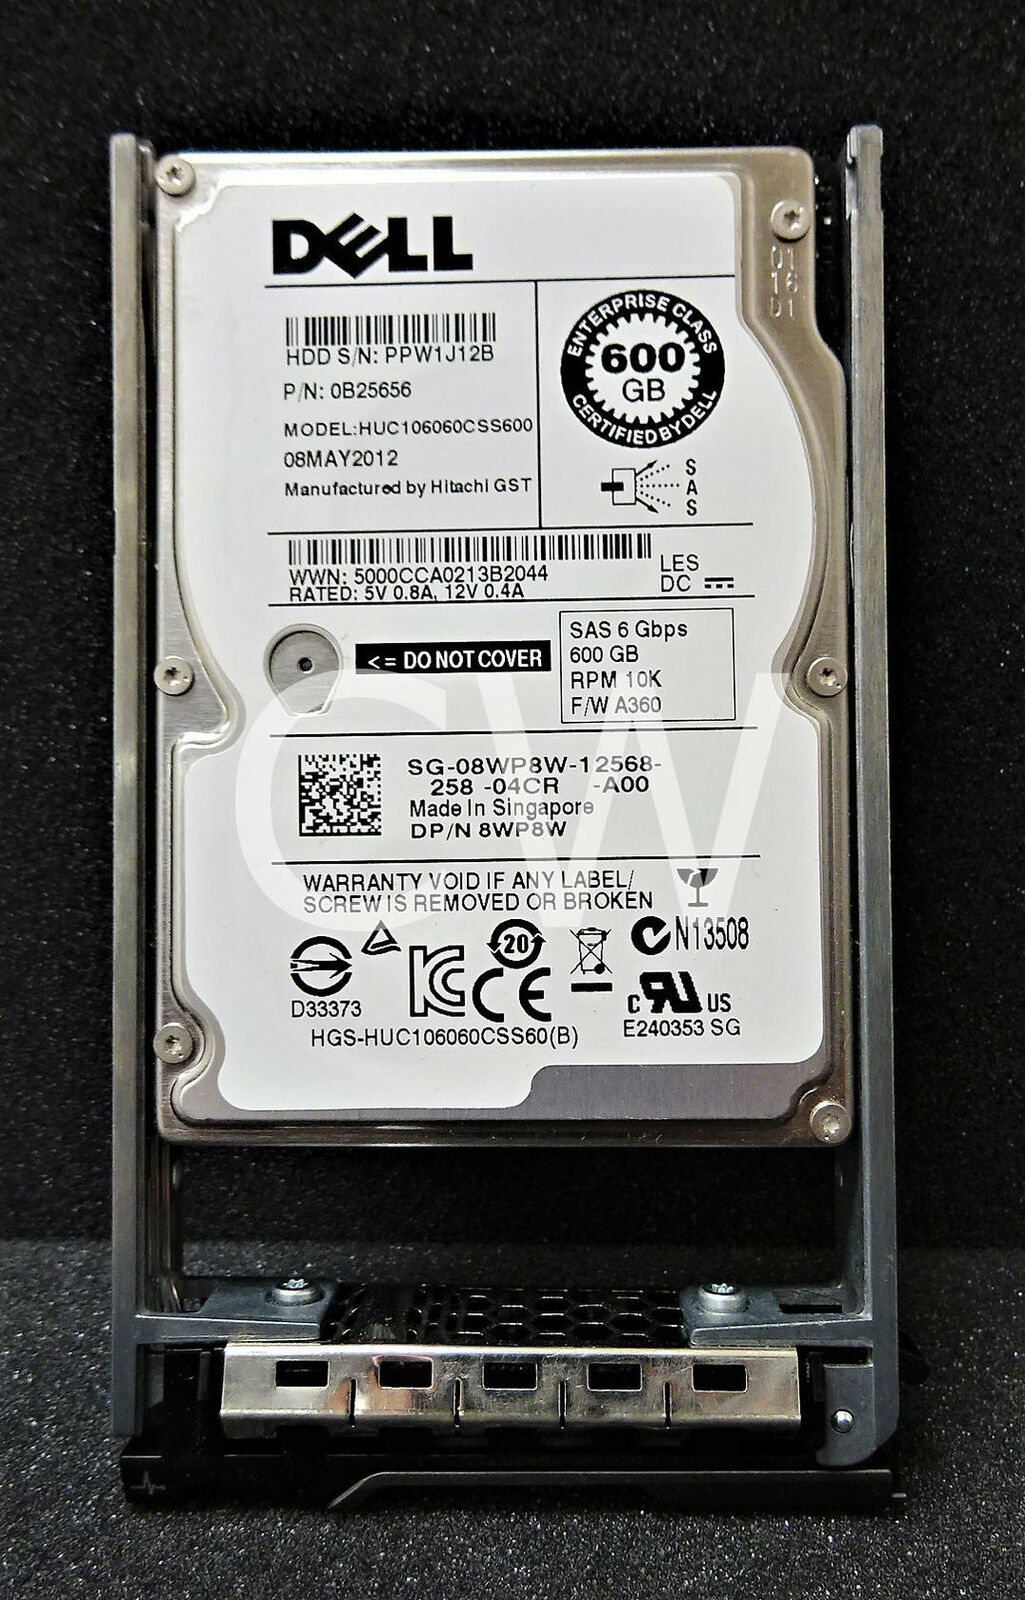 Dell ENT 8WP8W HUC106060CSS600 600GB 10K RPM 6Gb/s SAS 2.5